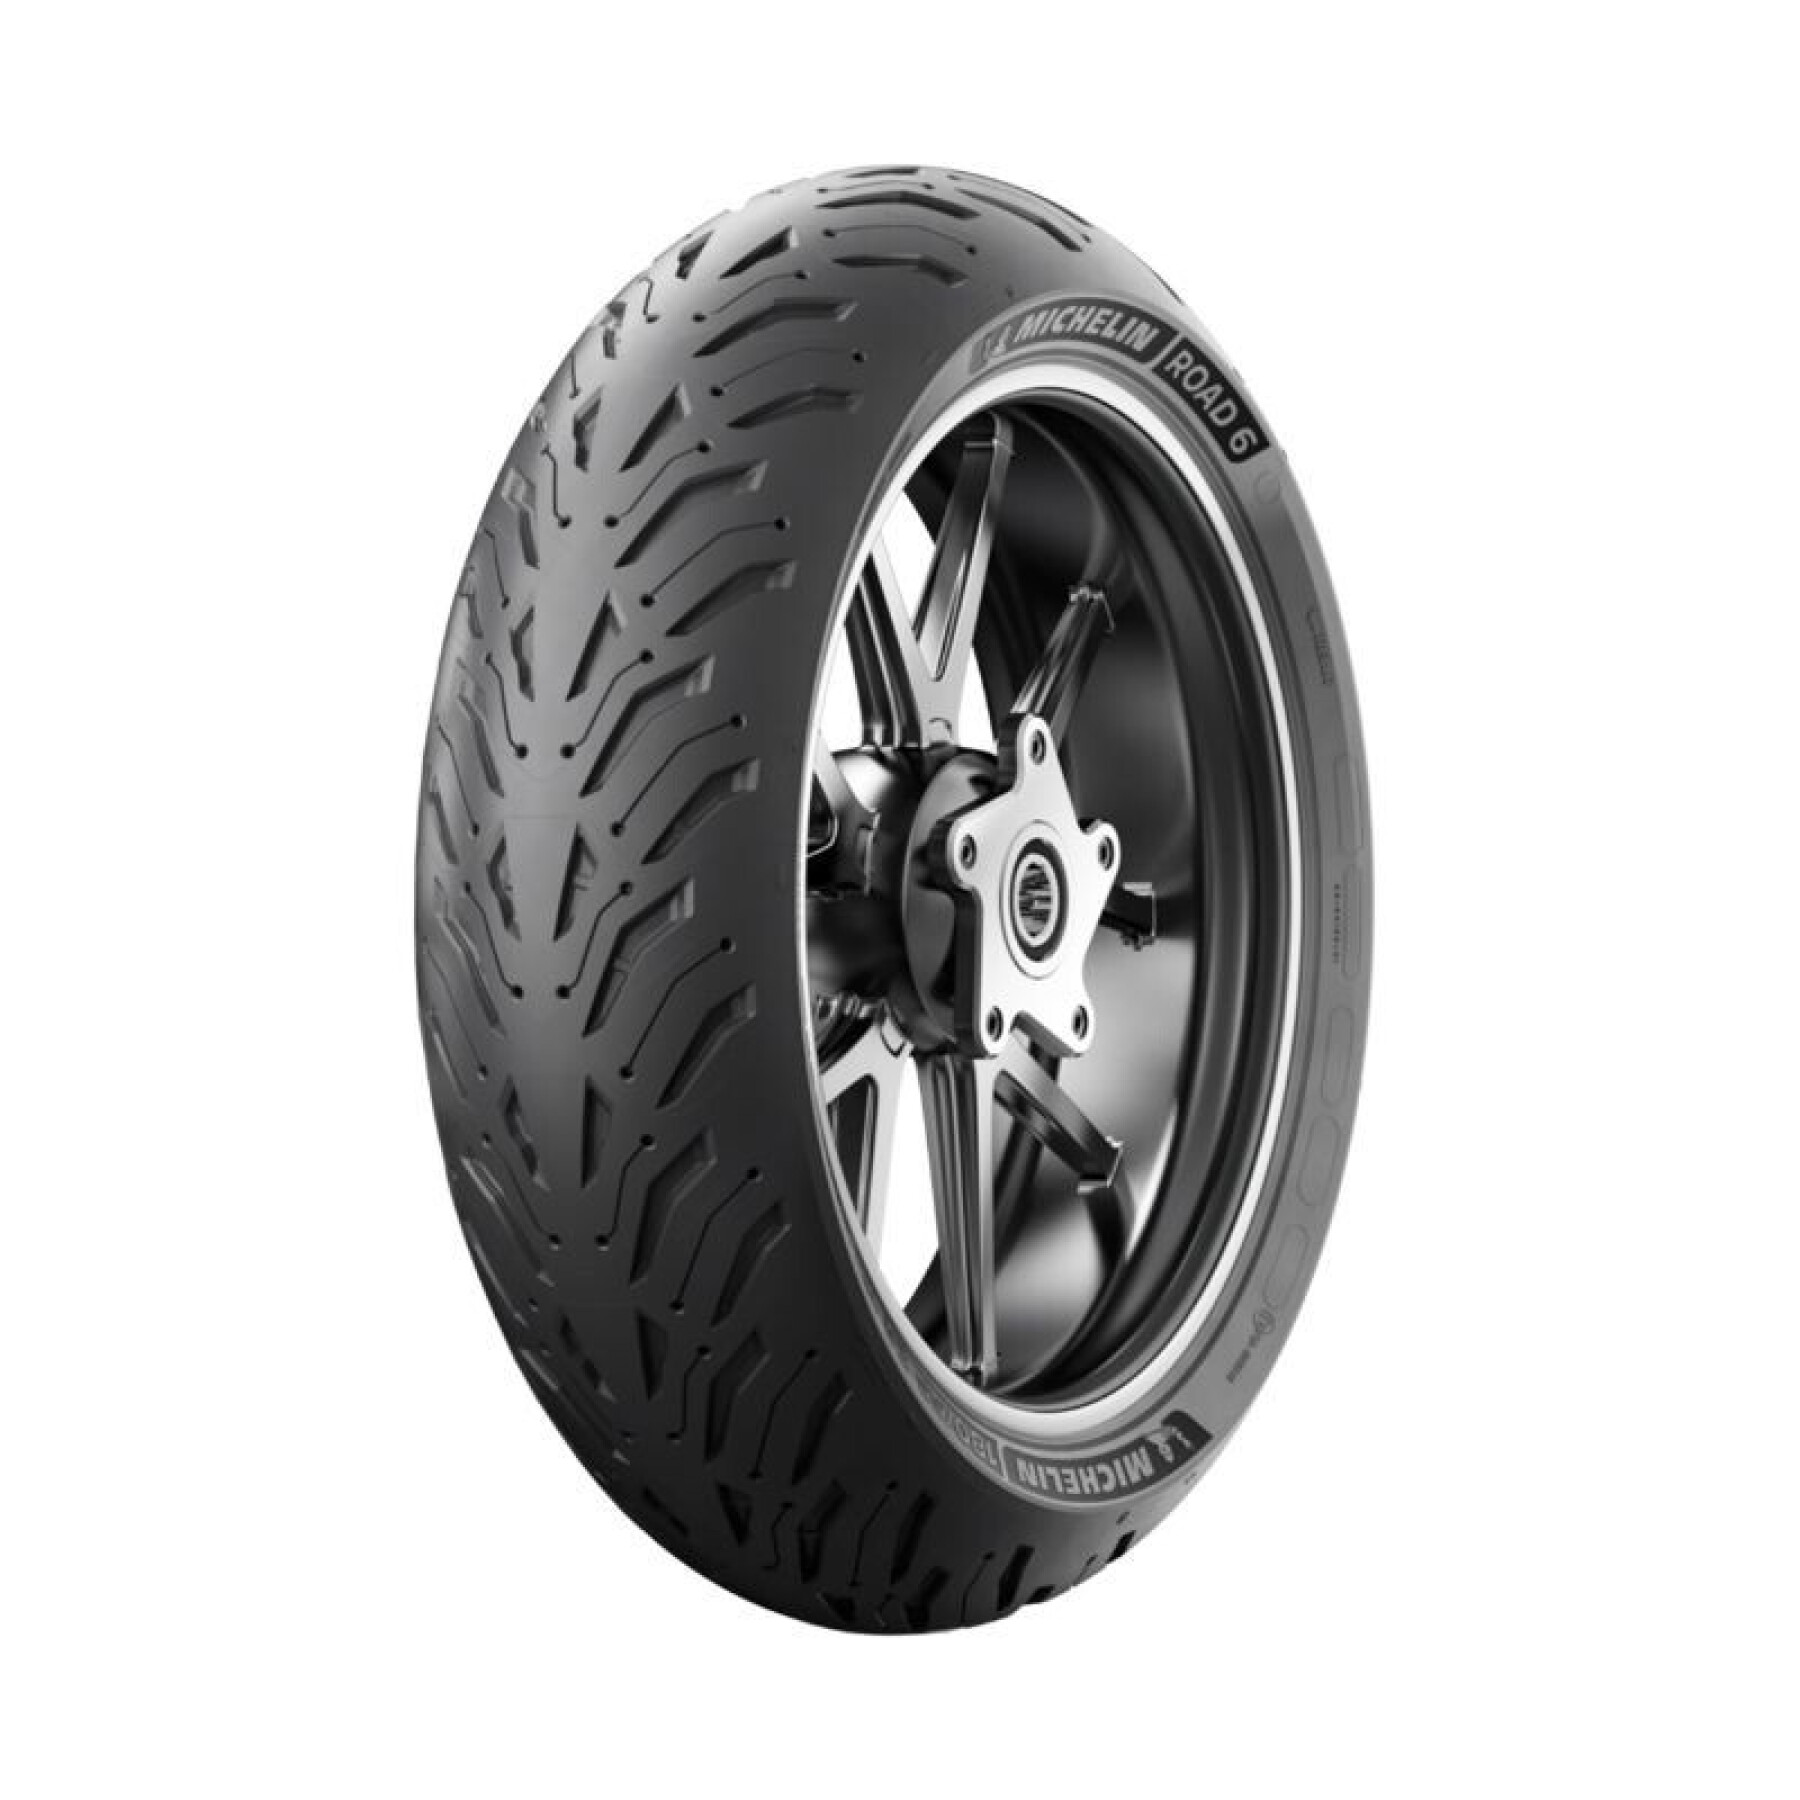 Rear tire Michelin Road 6 Radial ZR TL 69W 150-70-17